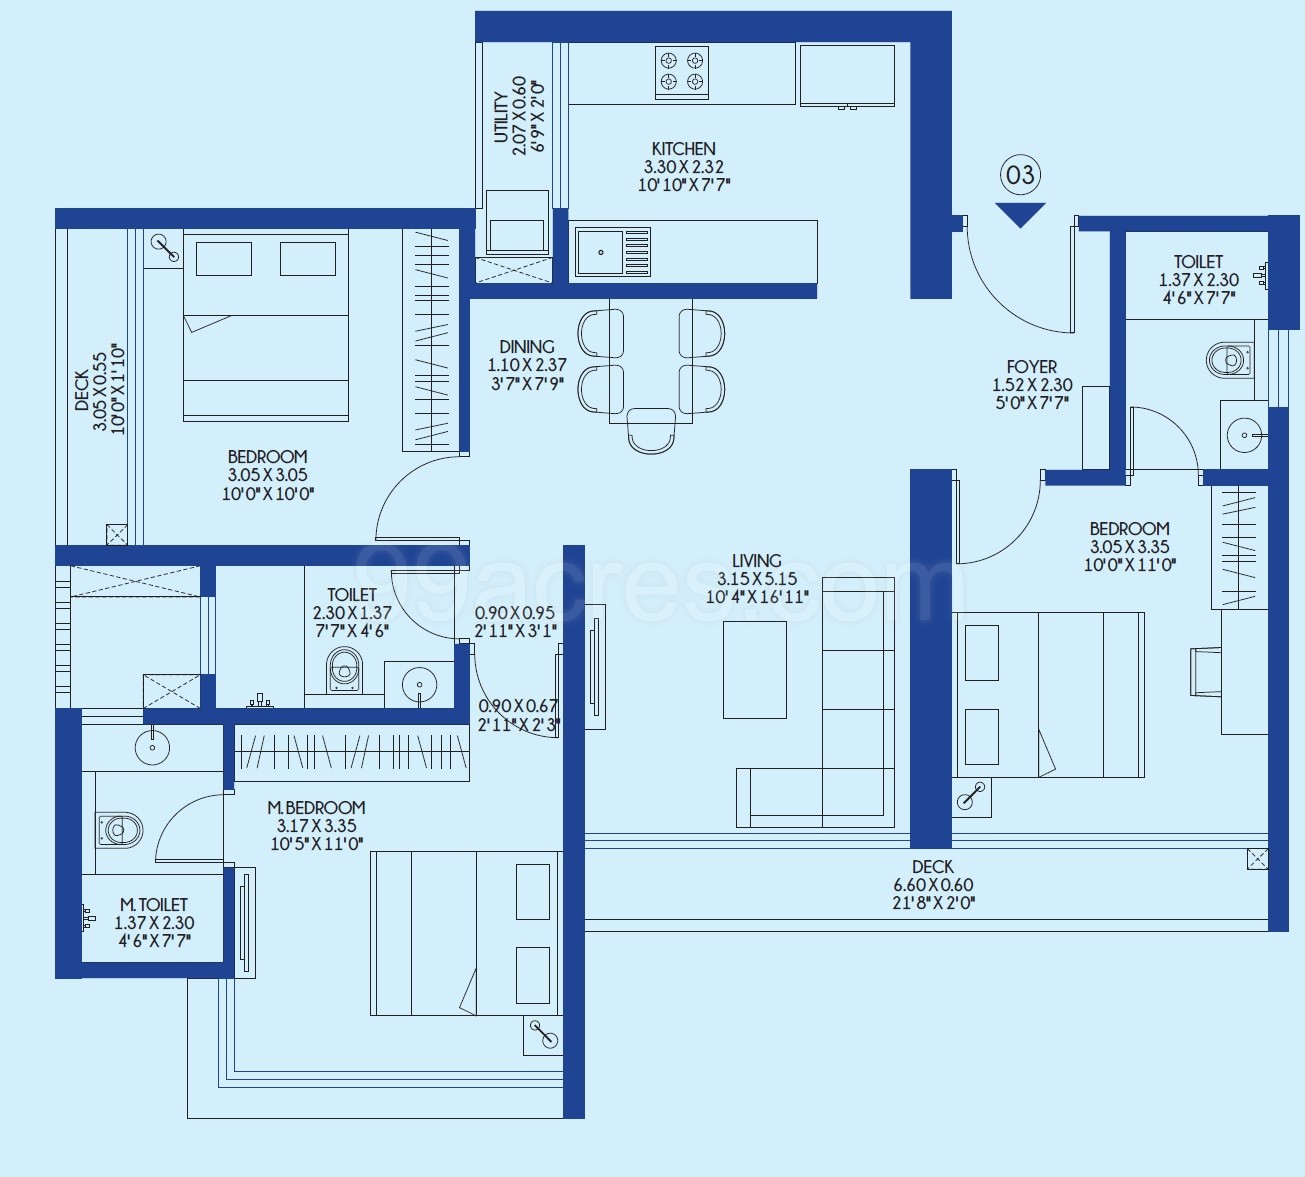 3 BHK Flat in Godrej Exquisite floor plan 922 sq.ft. (85.66 sq.m.)